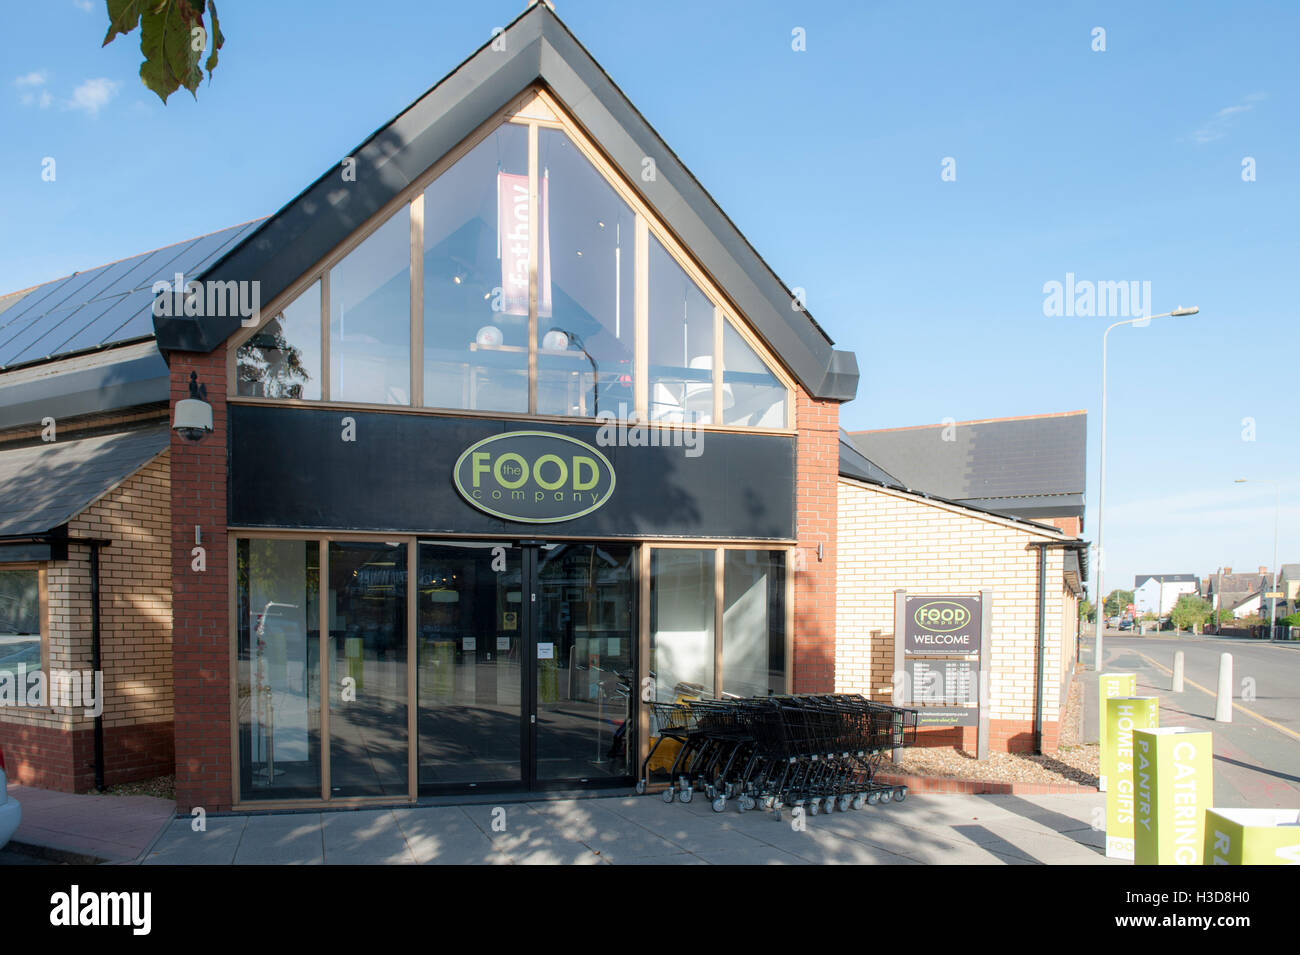 Un magasin d'aliments dans l'Essex Colchester a appelé l'entreprise alimentaire vente de produits alimentaires artisanaux fleurs et dispose d'un restaurant Banque D'Images